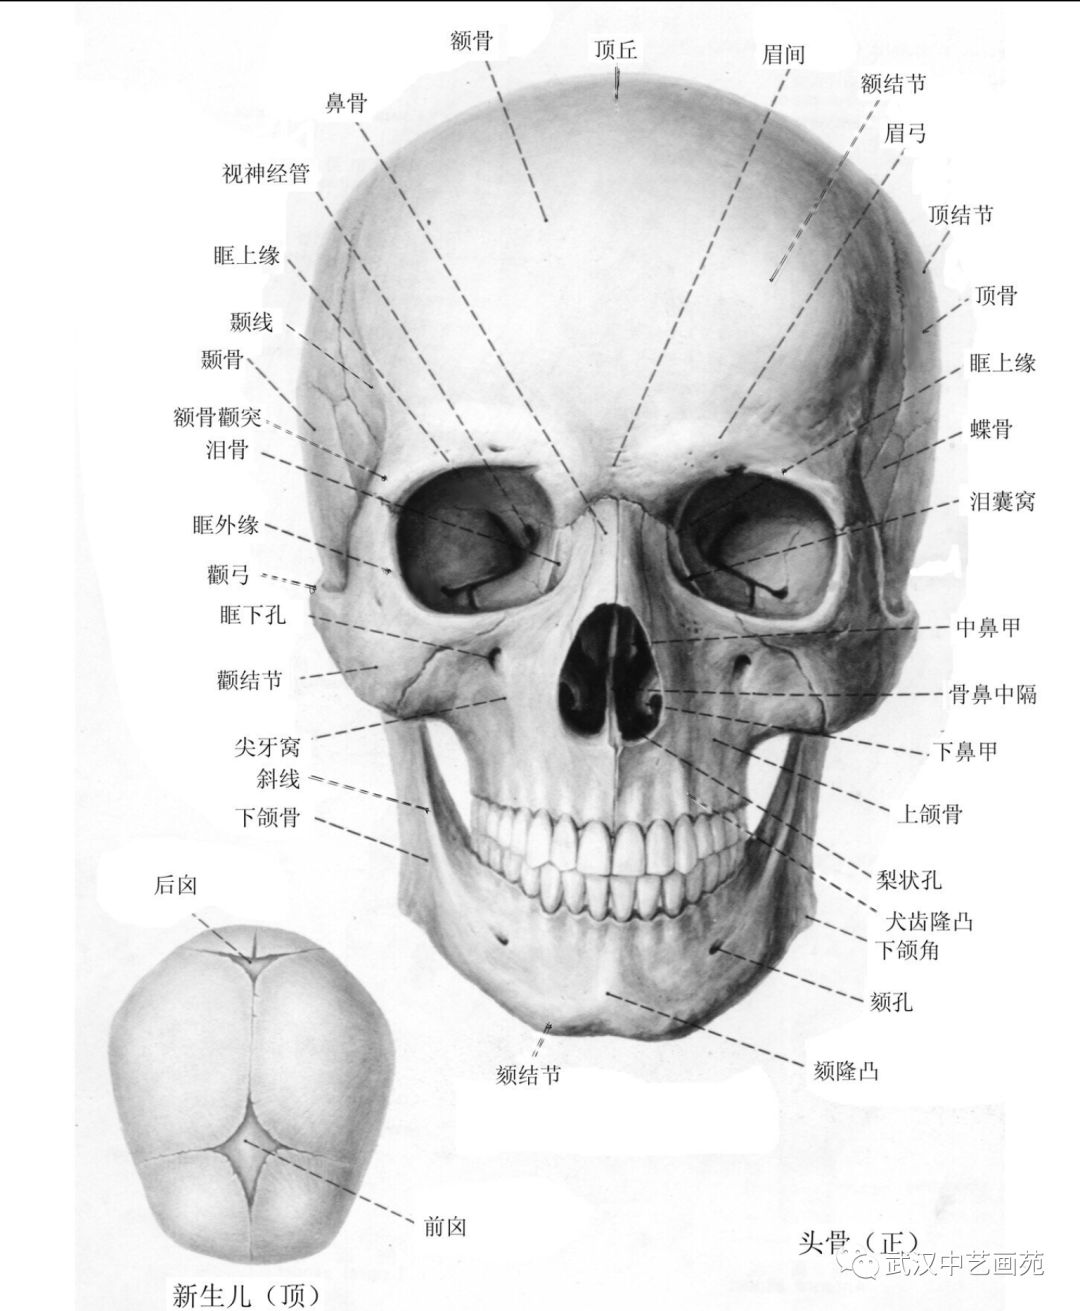 独家:湖北美术学院郭子瑶教授应邀来中艺画苑作"头骨结构解剖"讲座